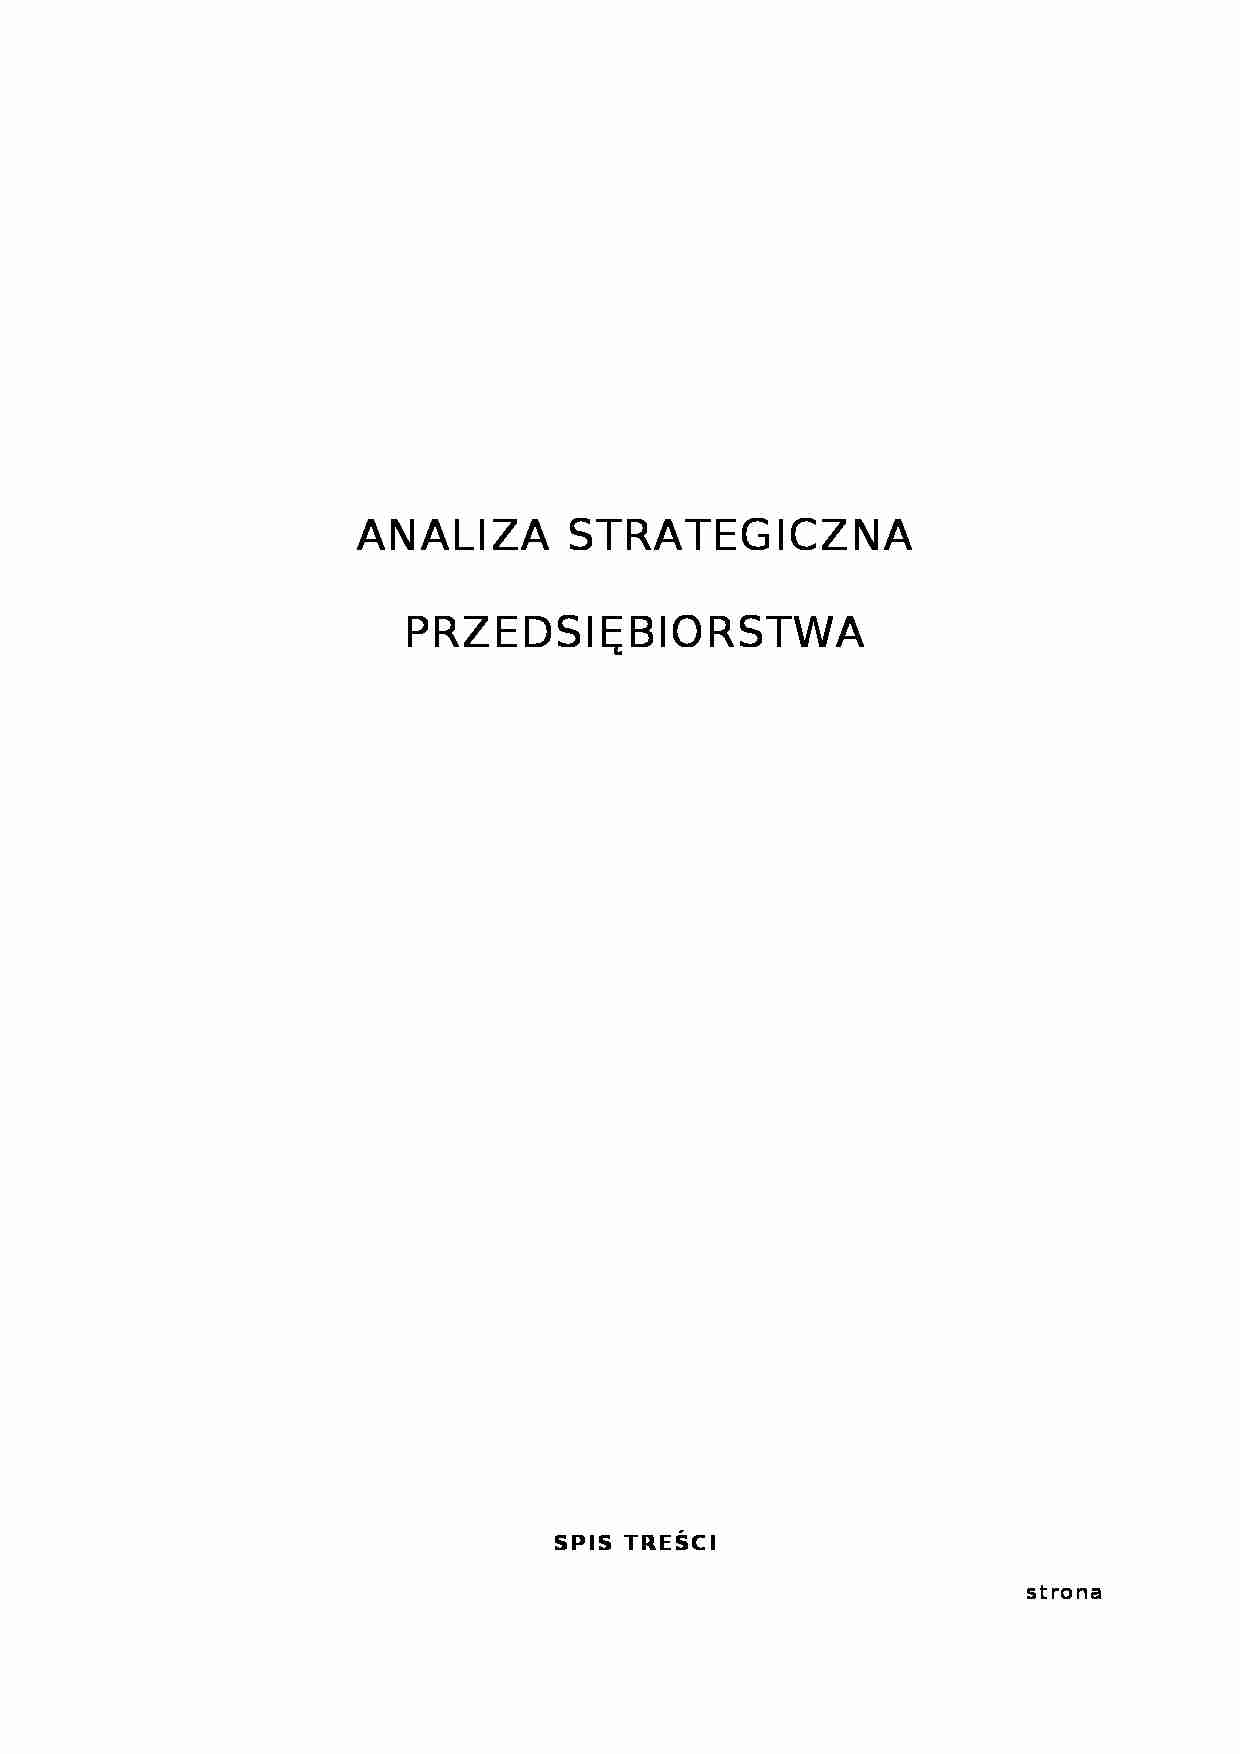 Analiza strategiczna przedsiębiorstwa - Wizerunek firmy - strona 1